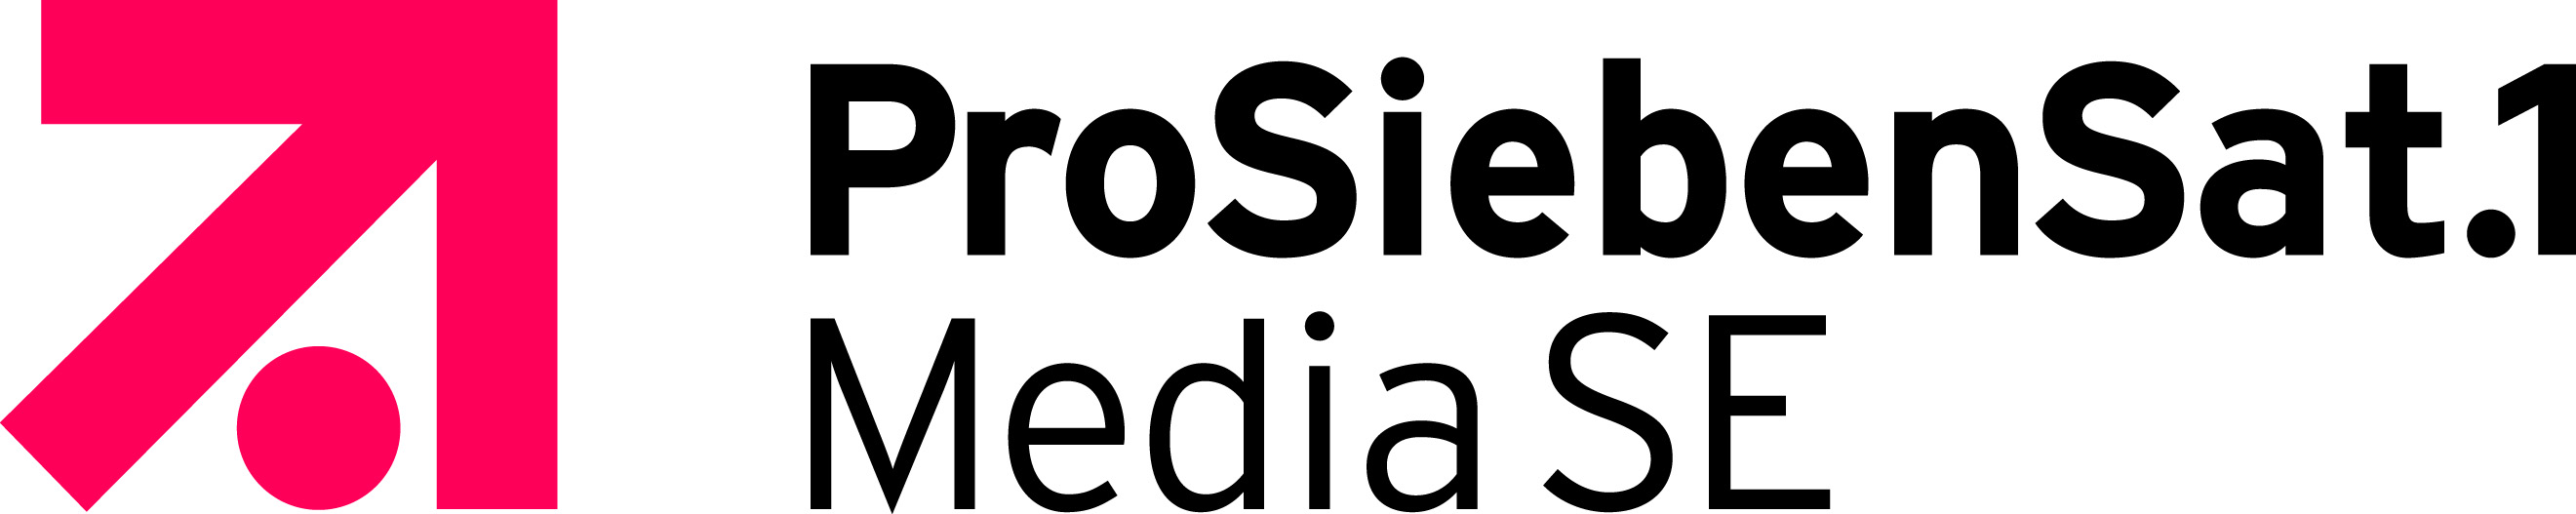 ProSiebenSat.1 Media Logo photo - 1